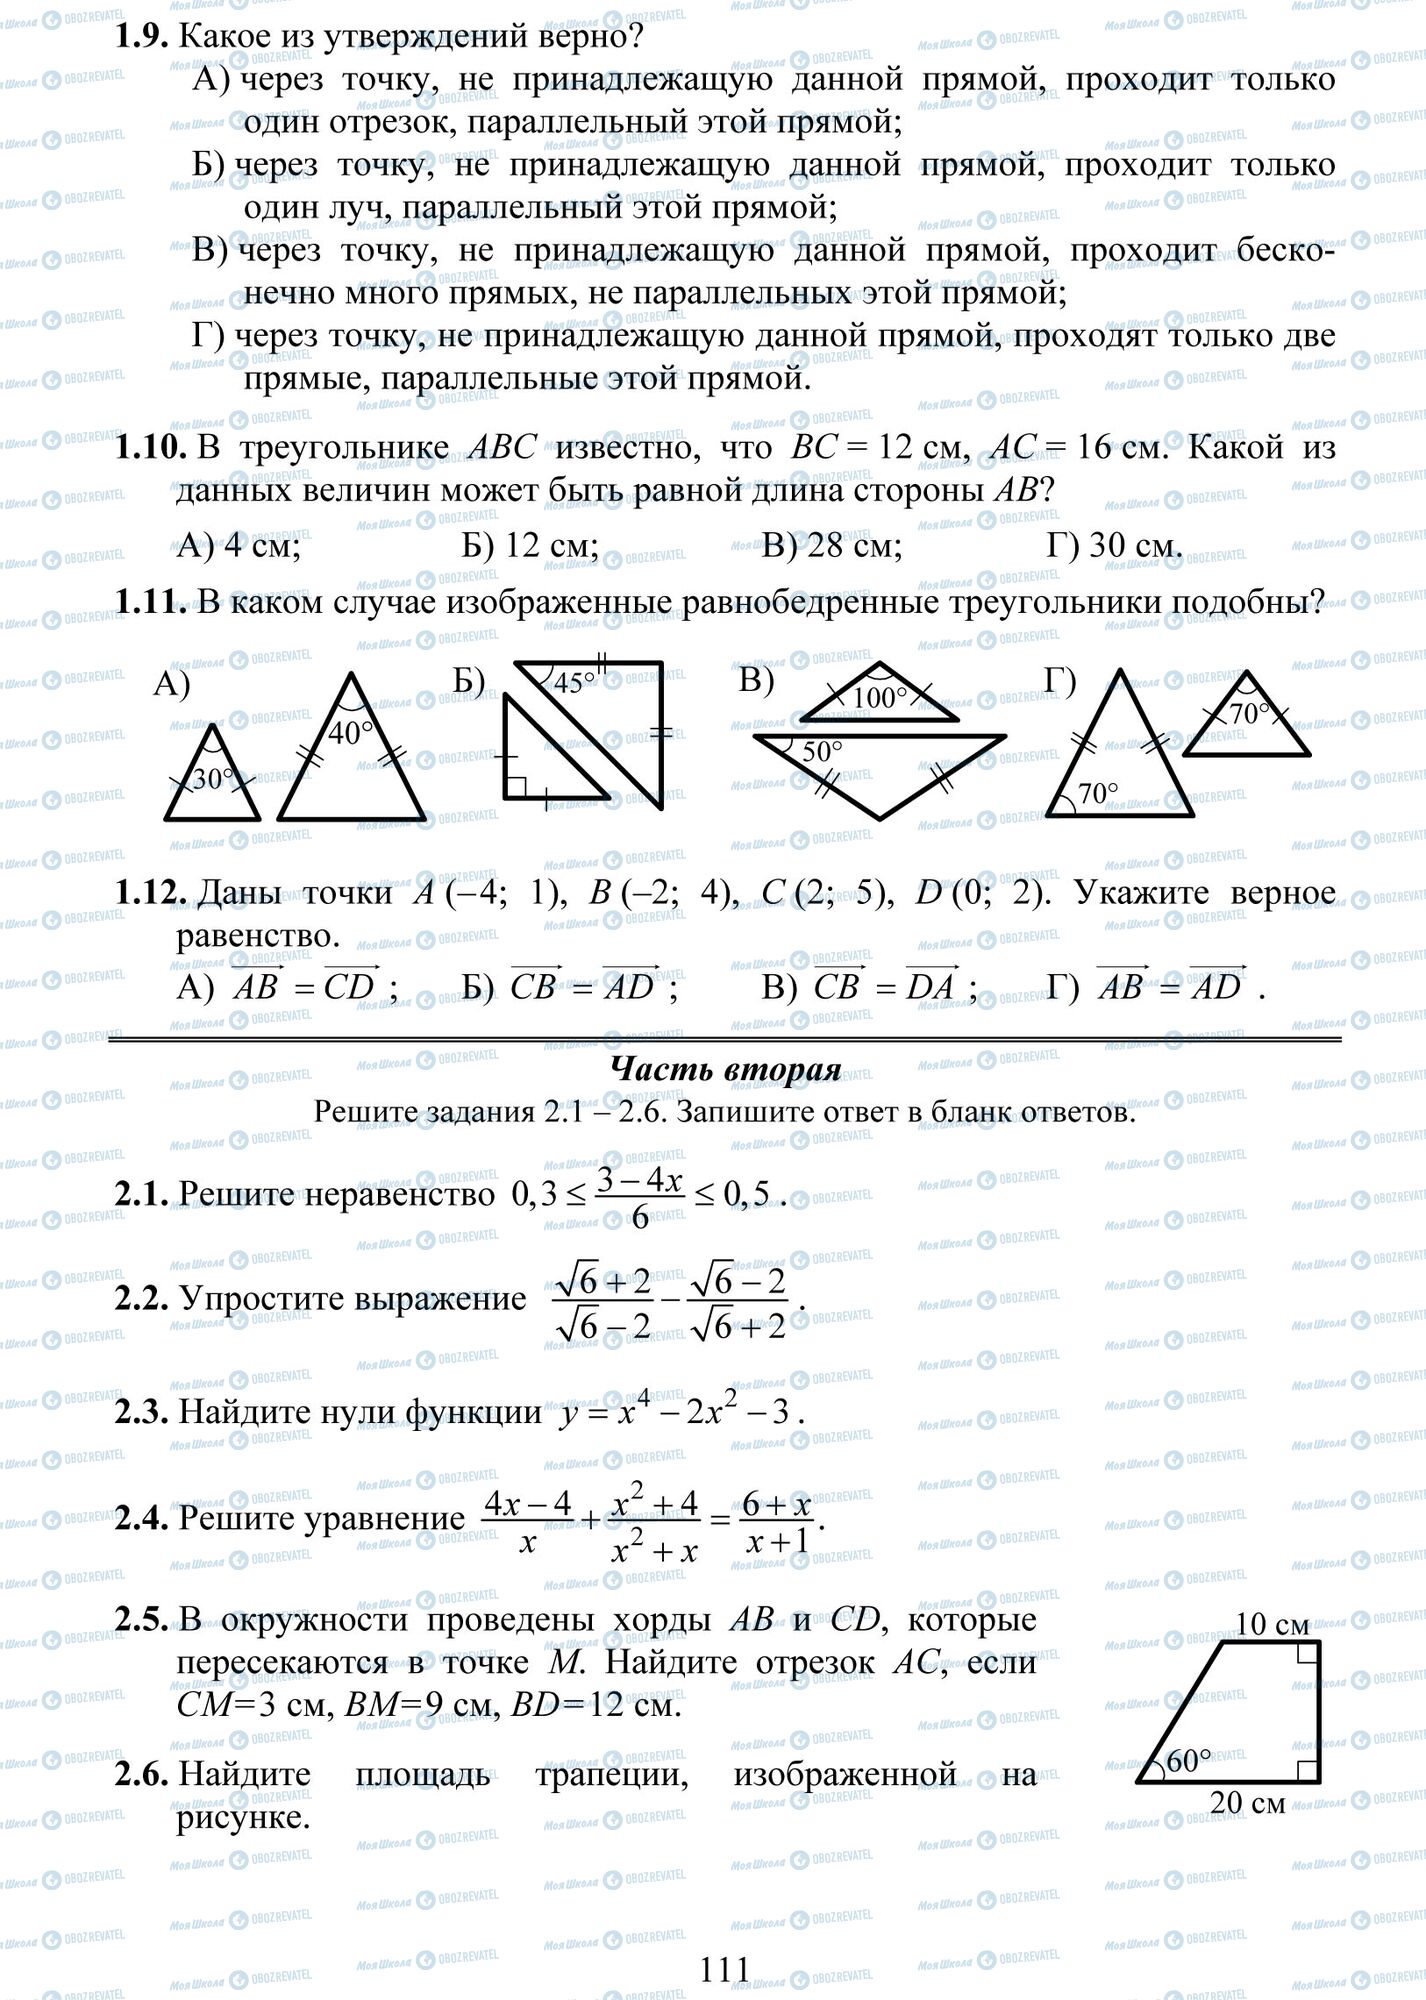 ДПА Математика 9 класс страница 9-12